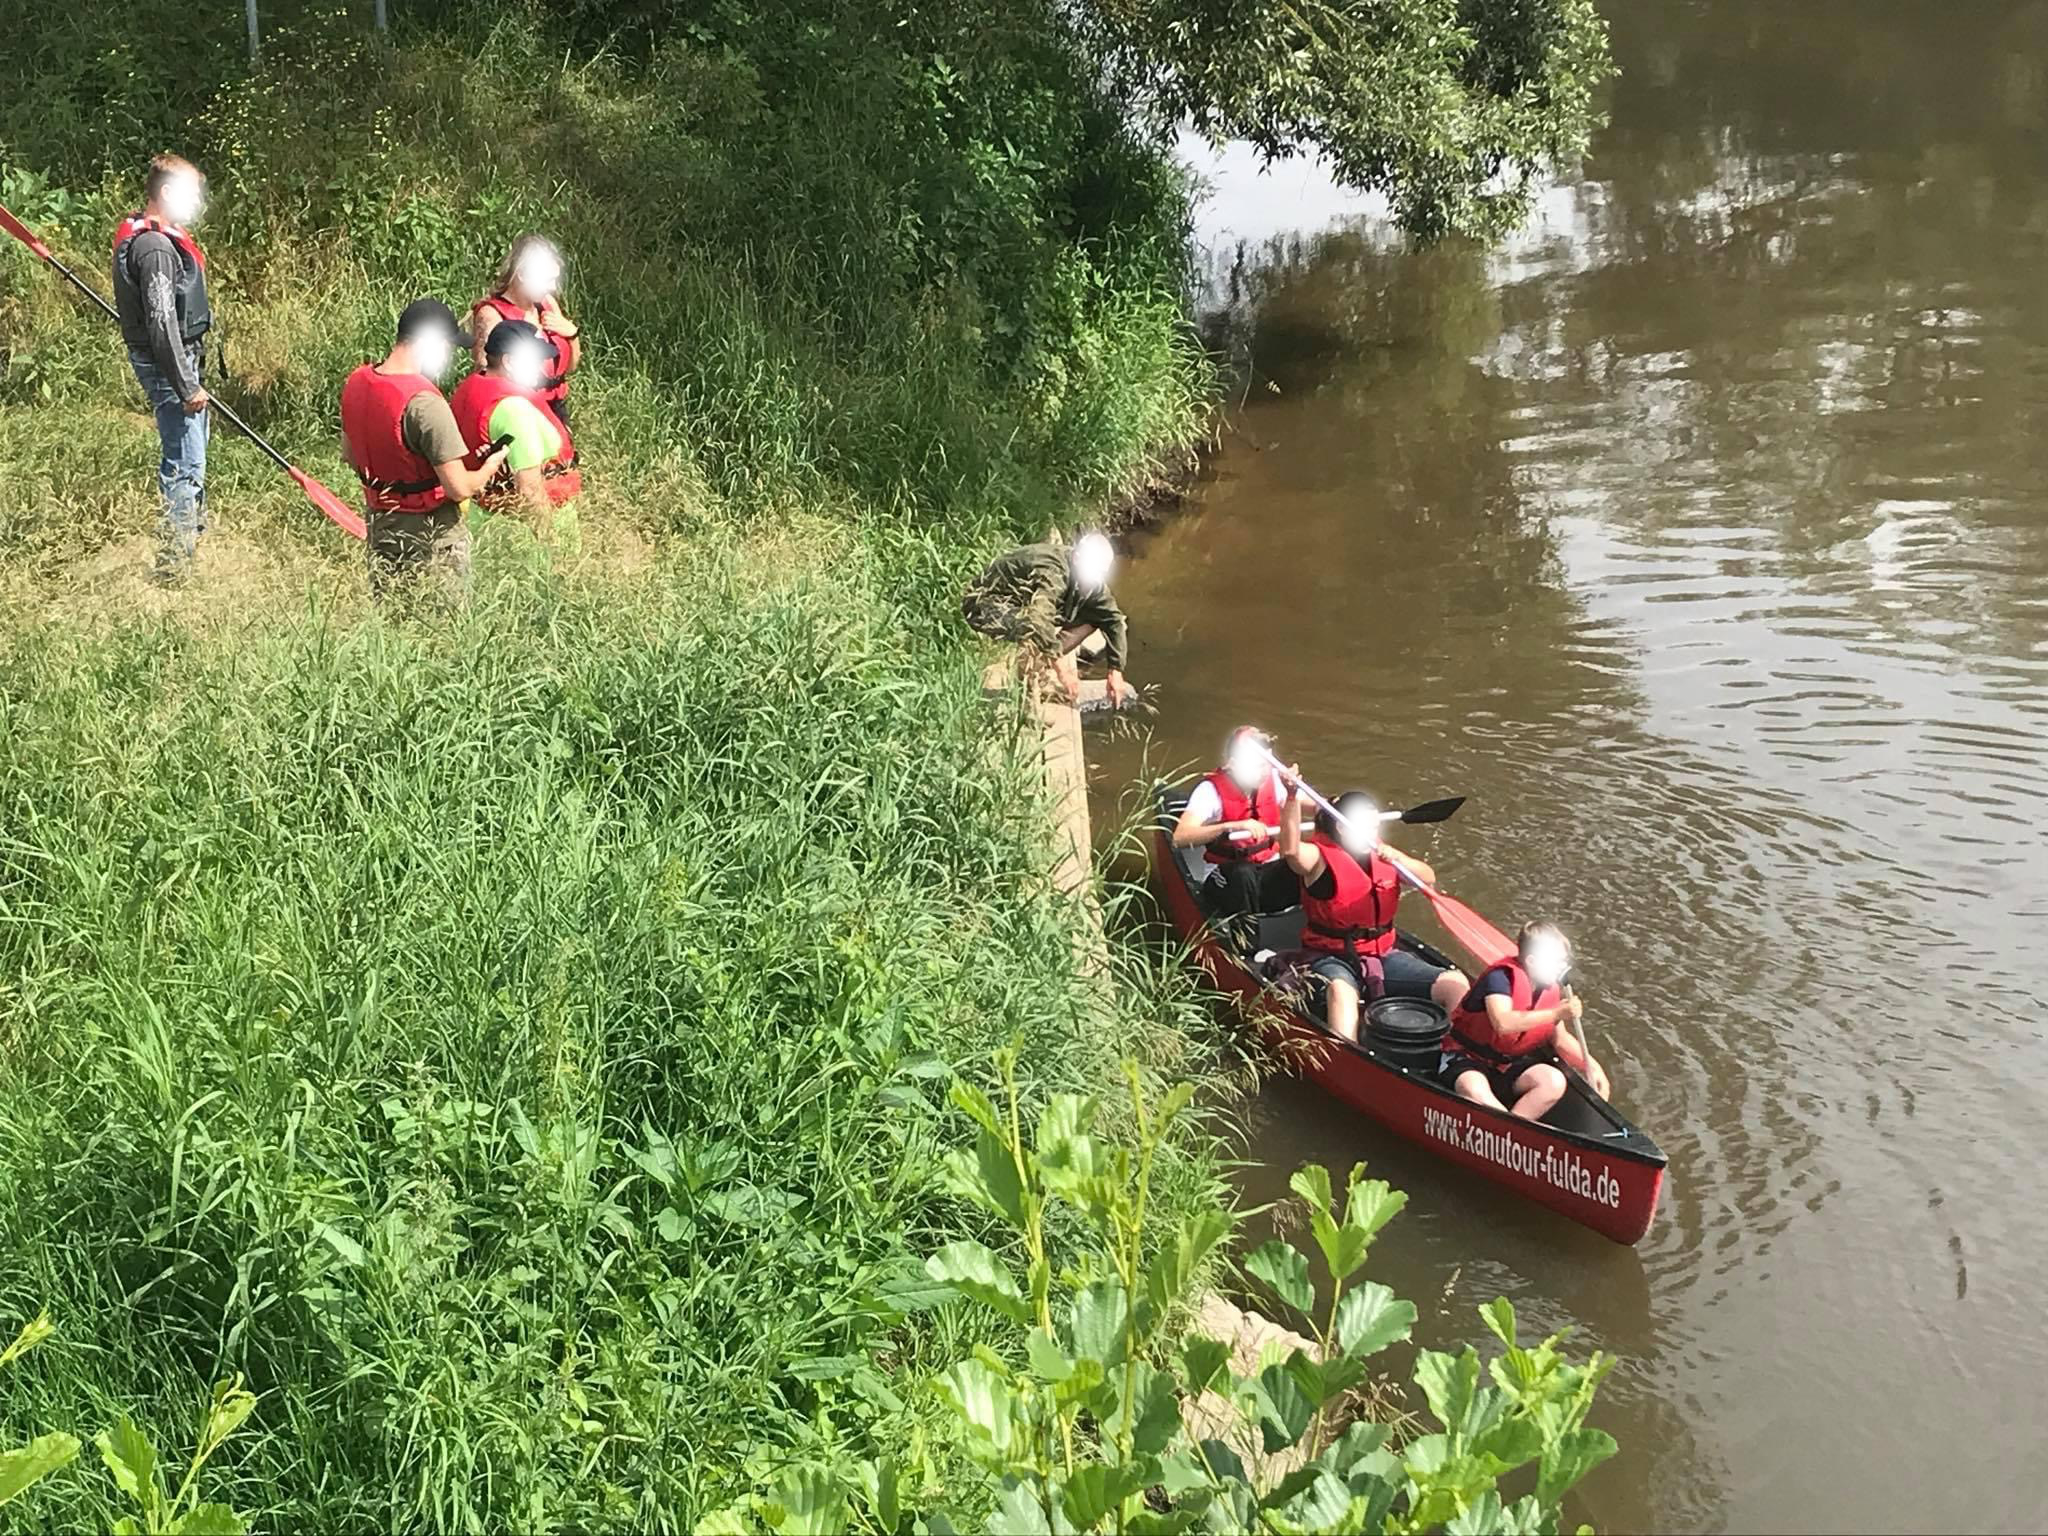 Ein rotes Kanu mit drei Menschen schwimmt auf einem Fluss, 5 weitere Menschen stehen an land und beobachten die Situation.